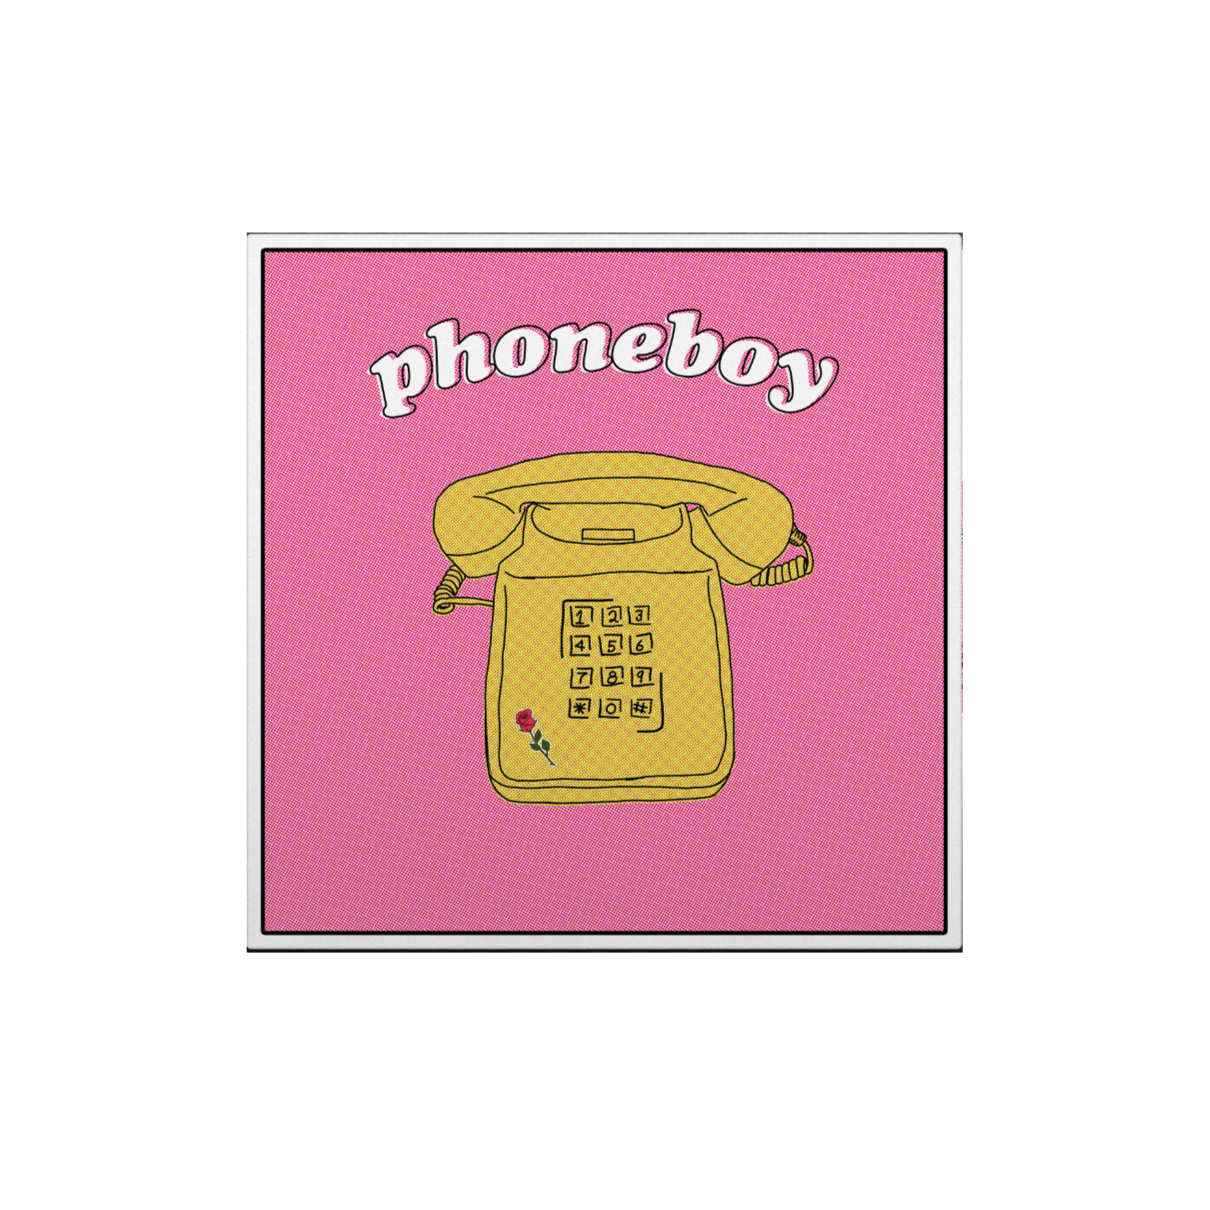 'Phoneboy' CD